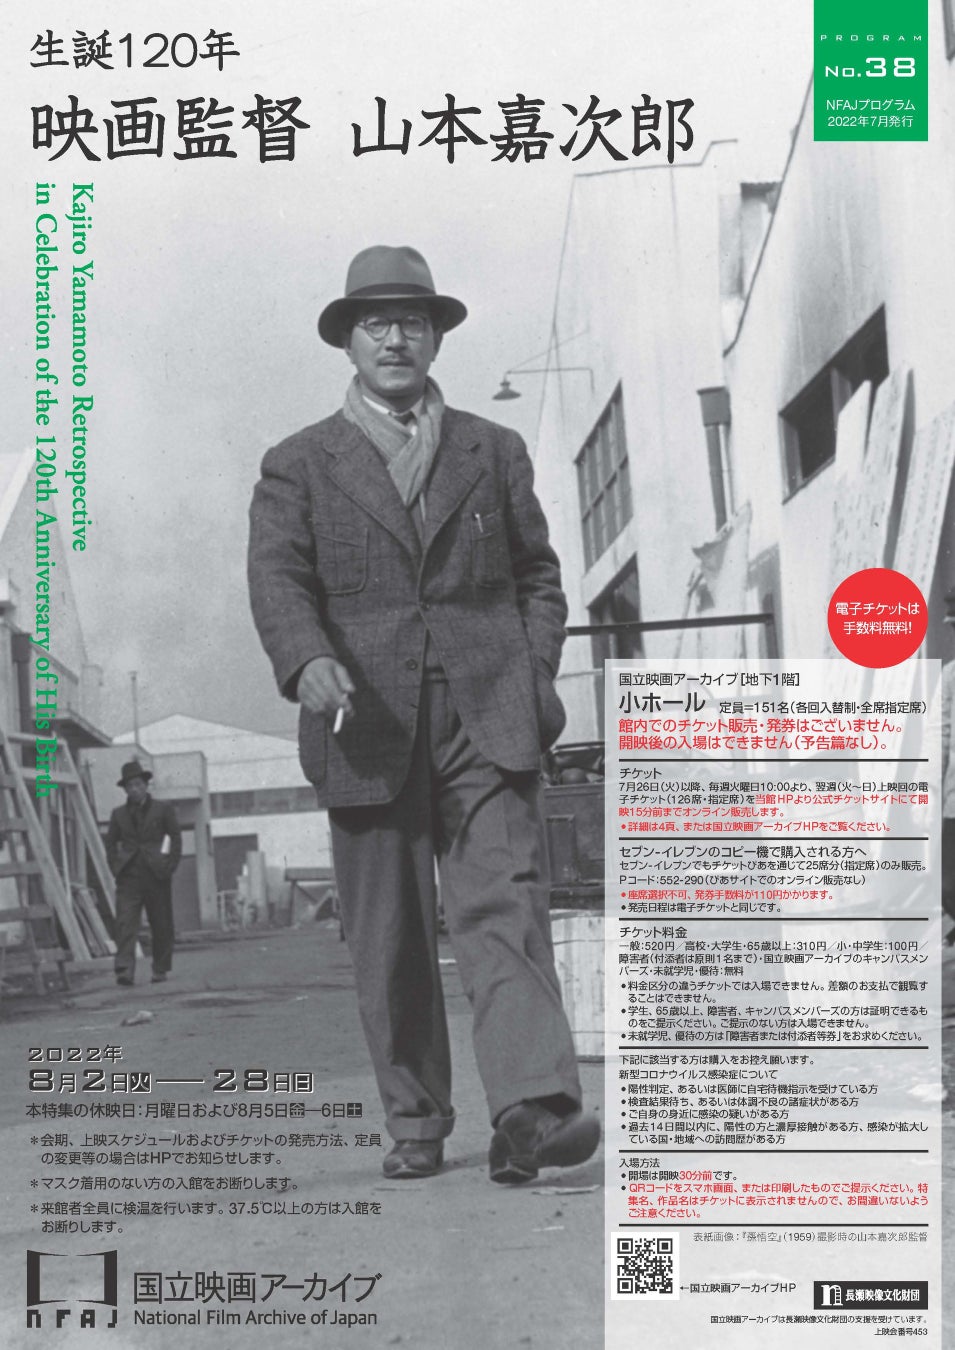 【国立映画アーカイブ】上映企画「生誕120年 映画監督 山本嘉次郎」開催のお知らせ